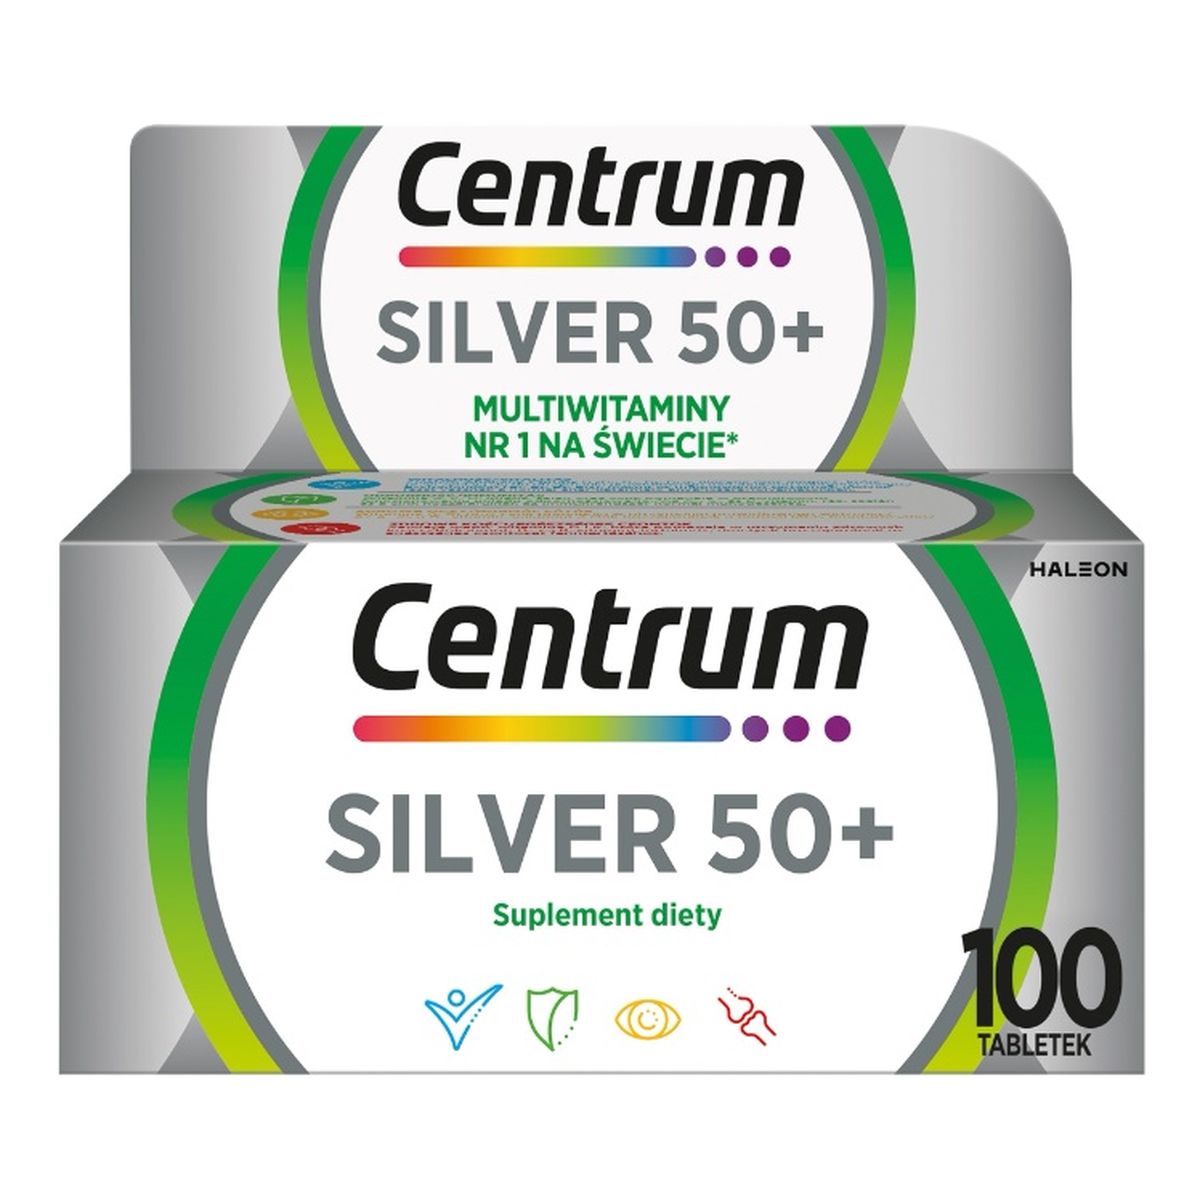 Centrum Silver 50+ multiwitaminy suplement diety 100 tabletek